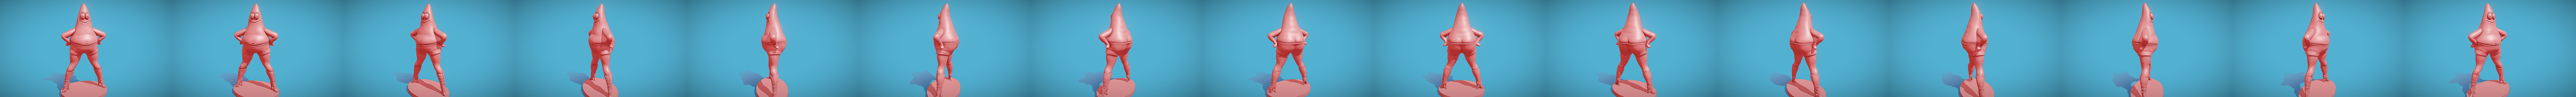 SpongeBob Patrick Star in heels for 3D printing - Buy Royalty Free